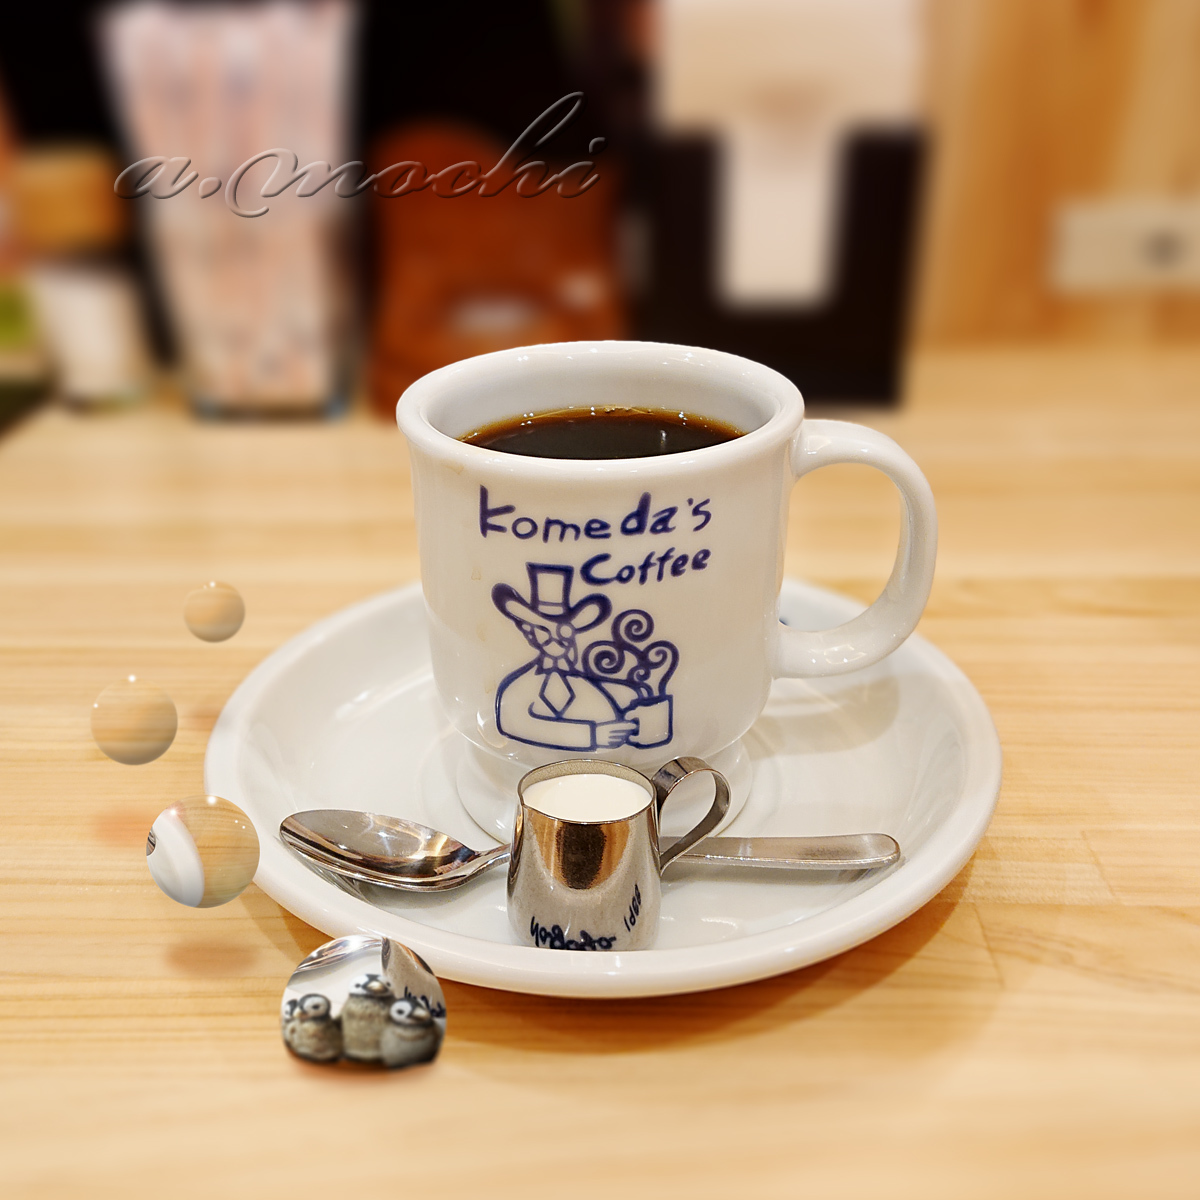 komeda_coffee.jpg